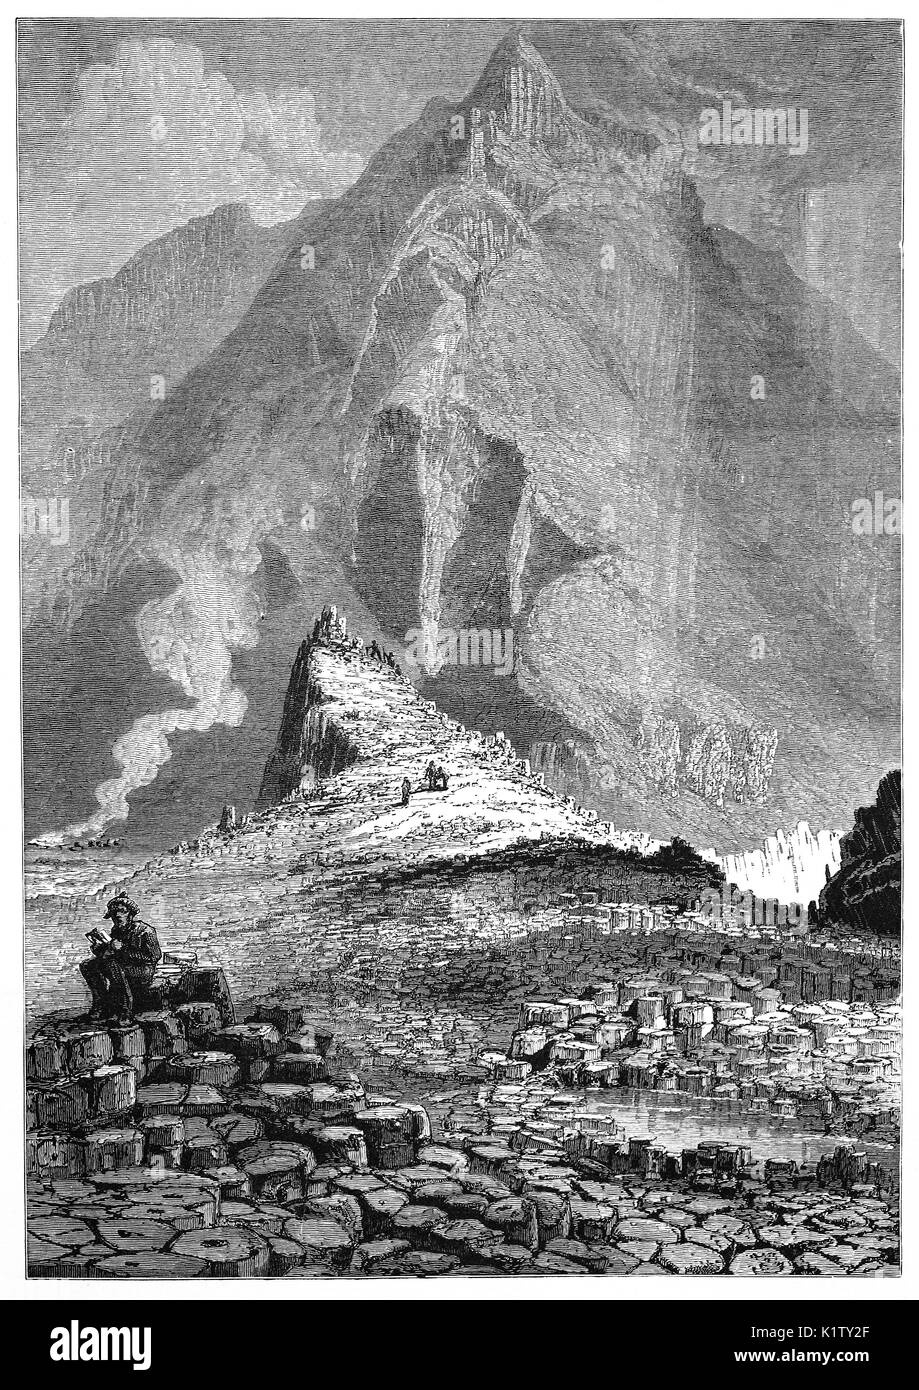 1870: El Giant's Causeway, un área de aproximadamente 40.000 columnas de basalto entrelazadas, el resultado de una antigua erupción volcánica. Se encuentra cerca de Bushmills en el Condado de Antrim, en la costa norte de Irlanda del Norte. Fue declarado Patrimonio de la Humanidad por la UNESCO en 1986, y reserva natural nacional el año siguiente. Foto de stock